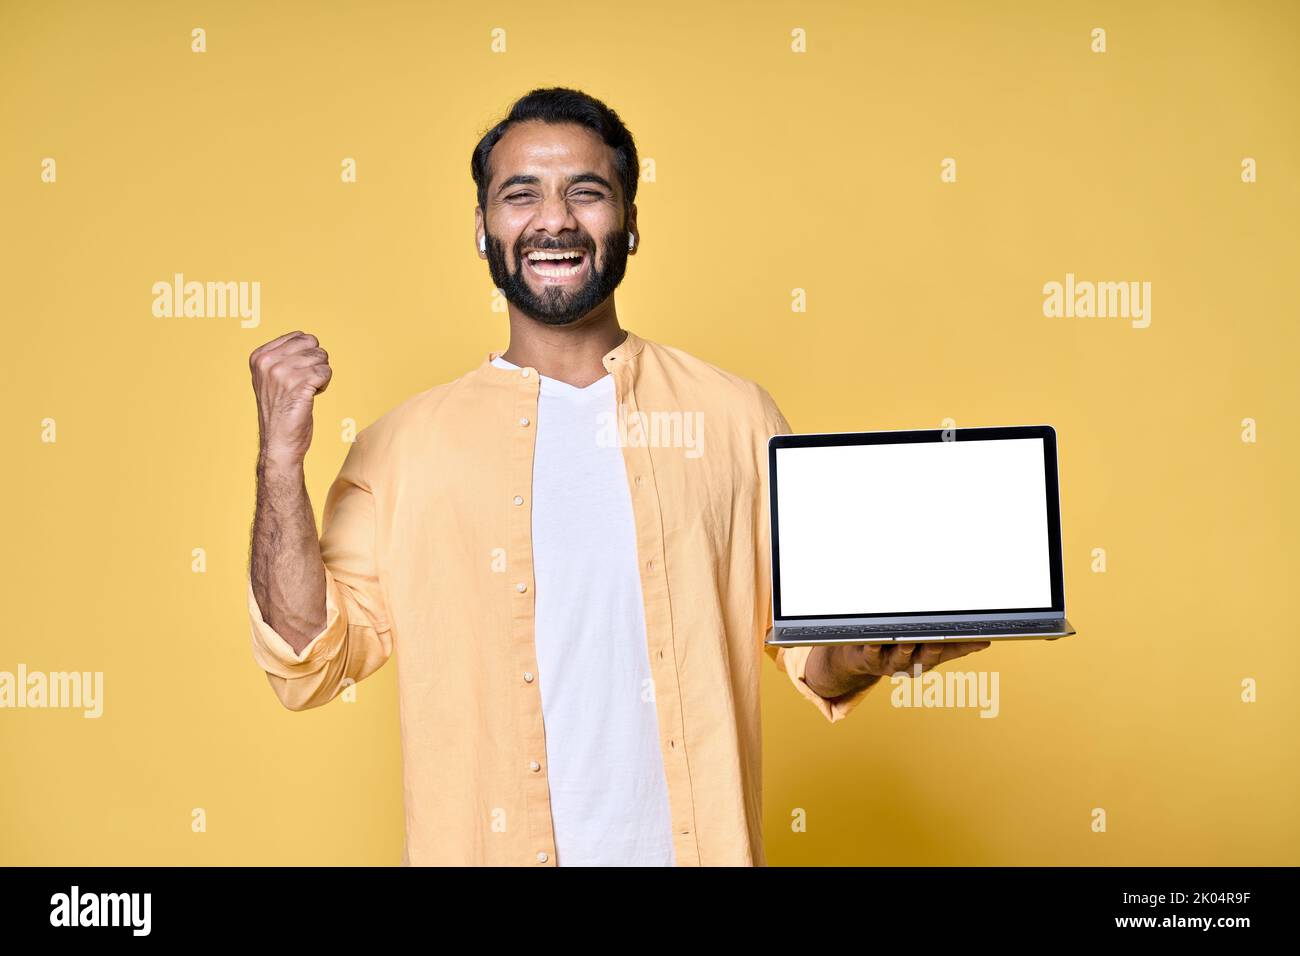 Un Indien heureux célébrant la victoire montrant un écran d'ordinateur portable isolé sur jaune. Banque D'Images